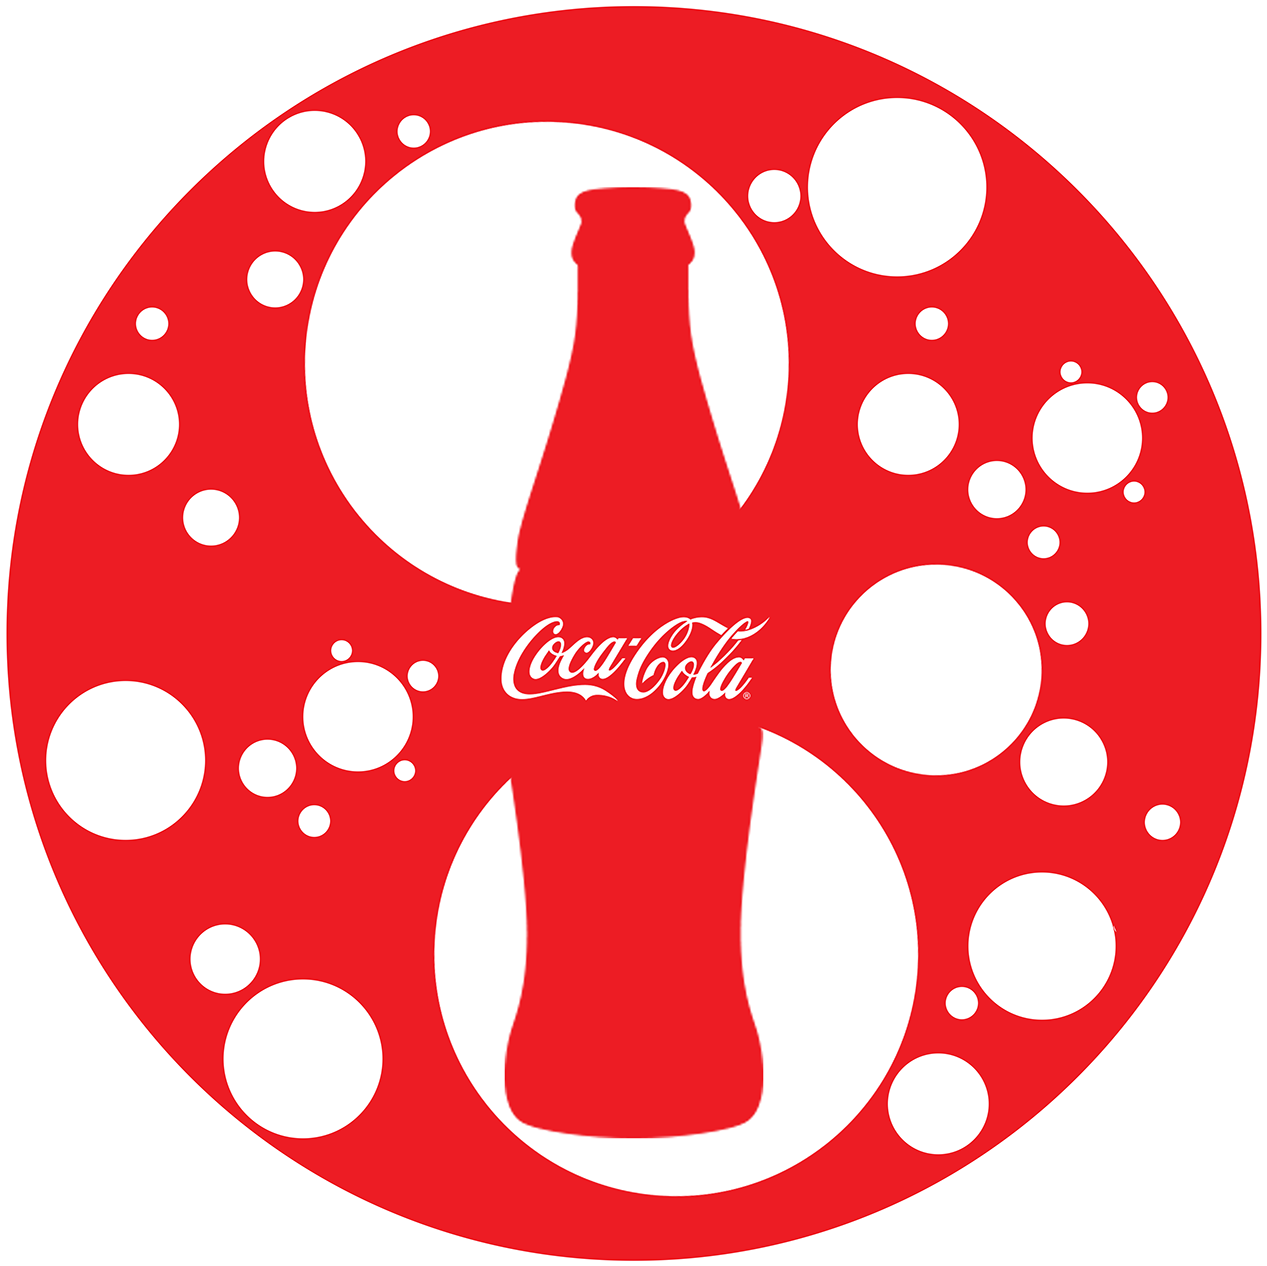 Thank You - Coca Cola (2084x2084)